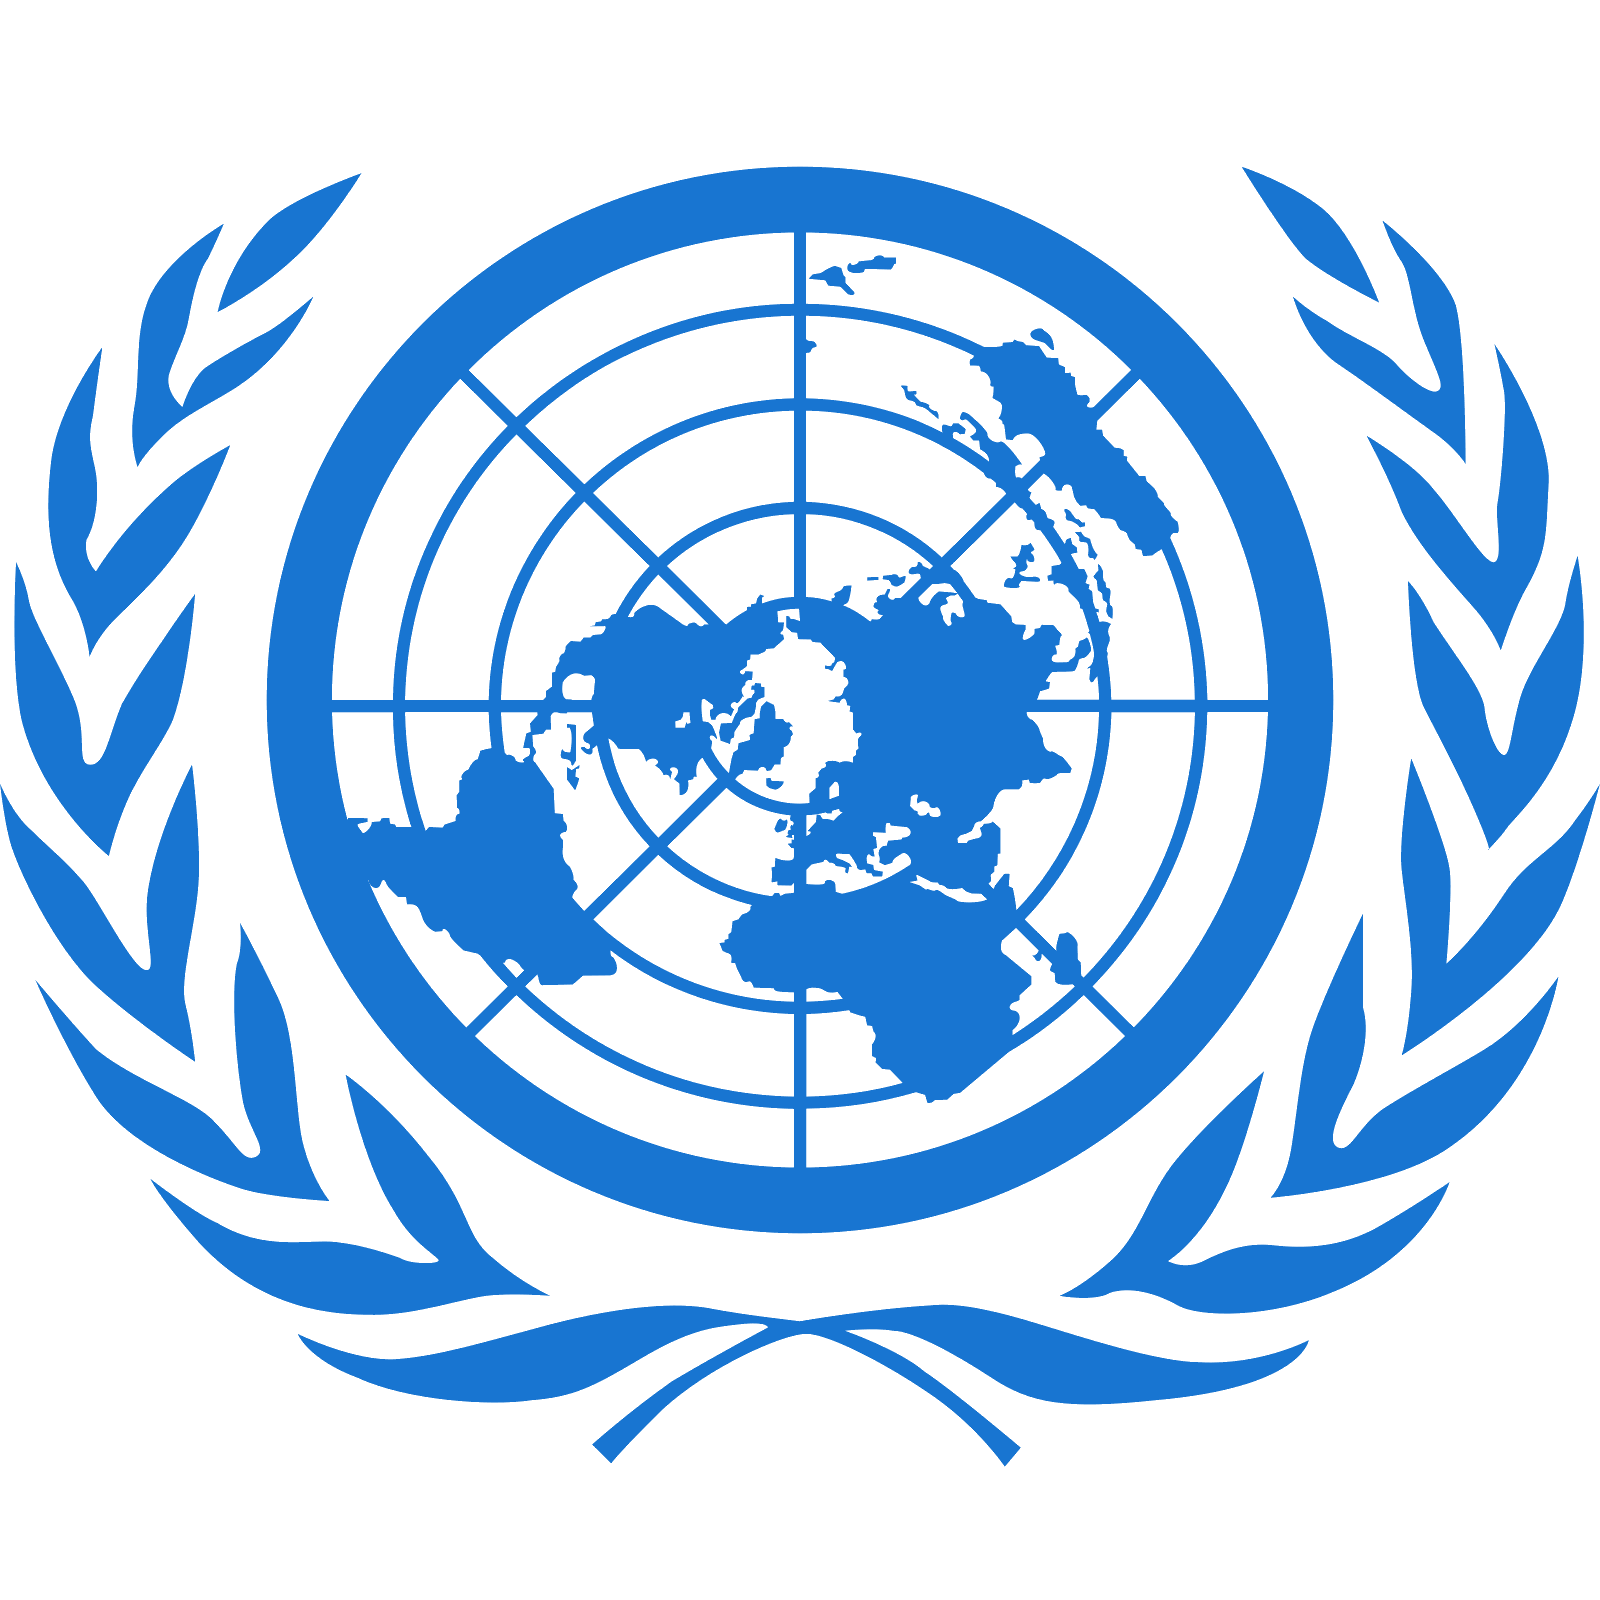 Logotipo das Nações Unidas